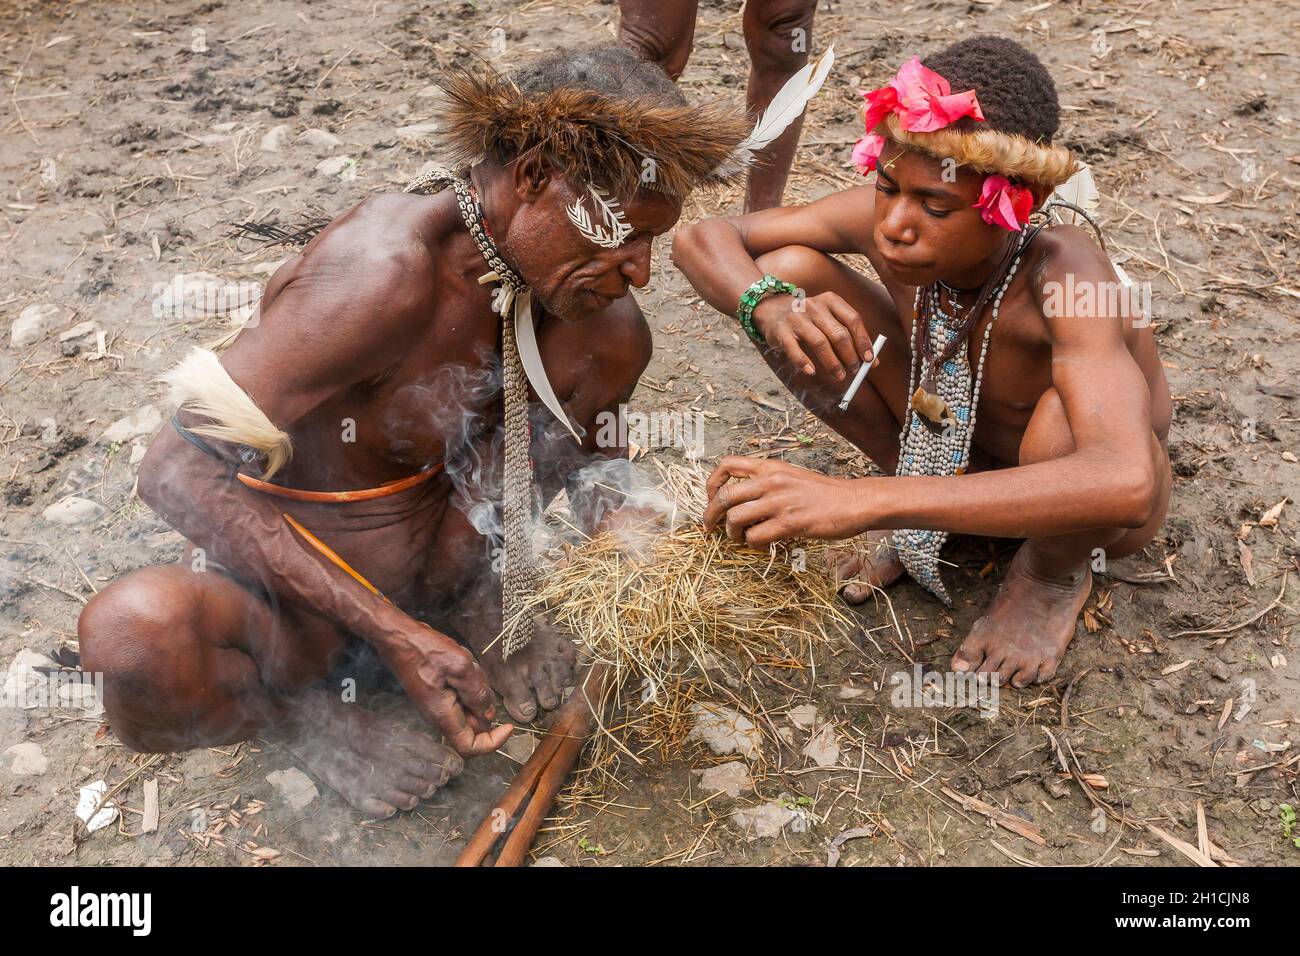 Wamena, Indonesien - 9. Januar 2010: Männer des Dani-Stammes in traditioneller Kleidung, die Feuer anzünden. Indonesisch-Neuguinea Stockfoto